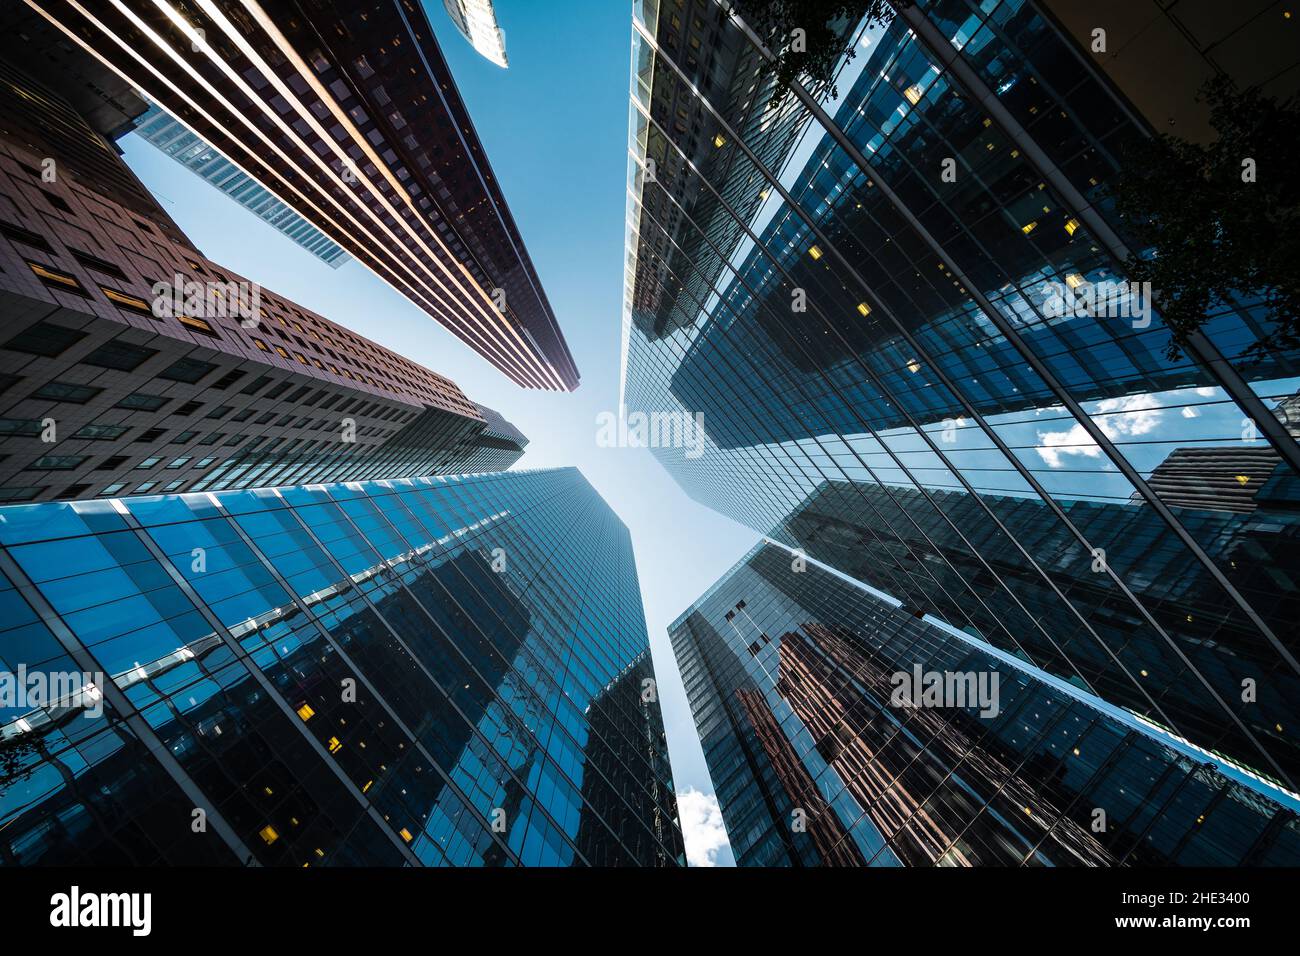 Concepto de negocios y finanzas, mirando hacia los rascacielos modernos en el distrito financiero de Toronto en Ontario, Canadá. Foto de stock